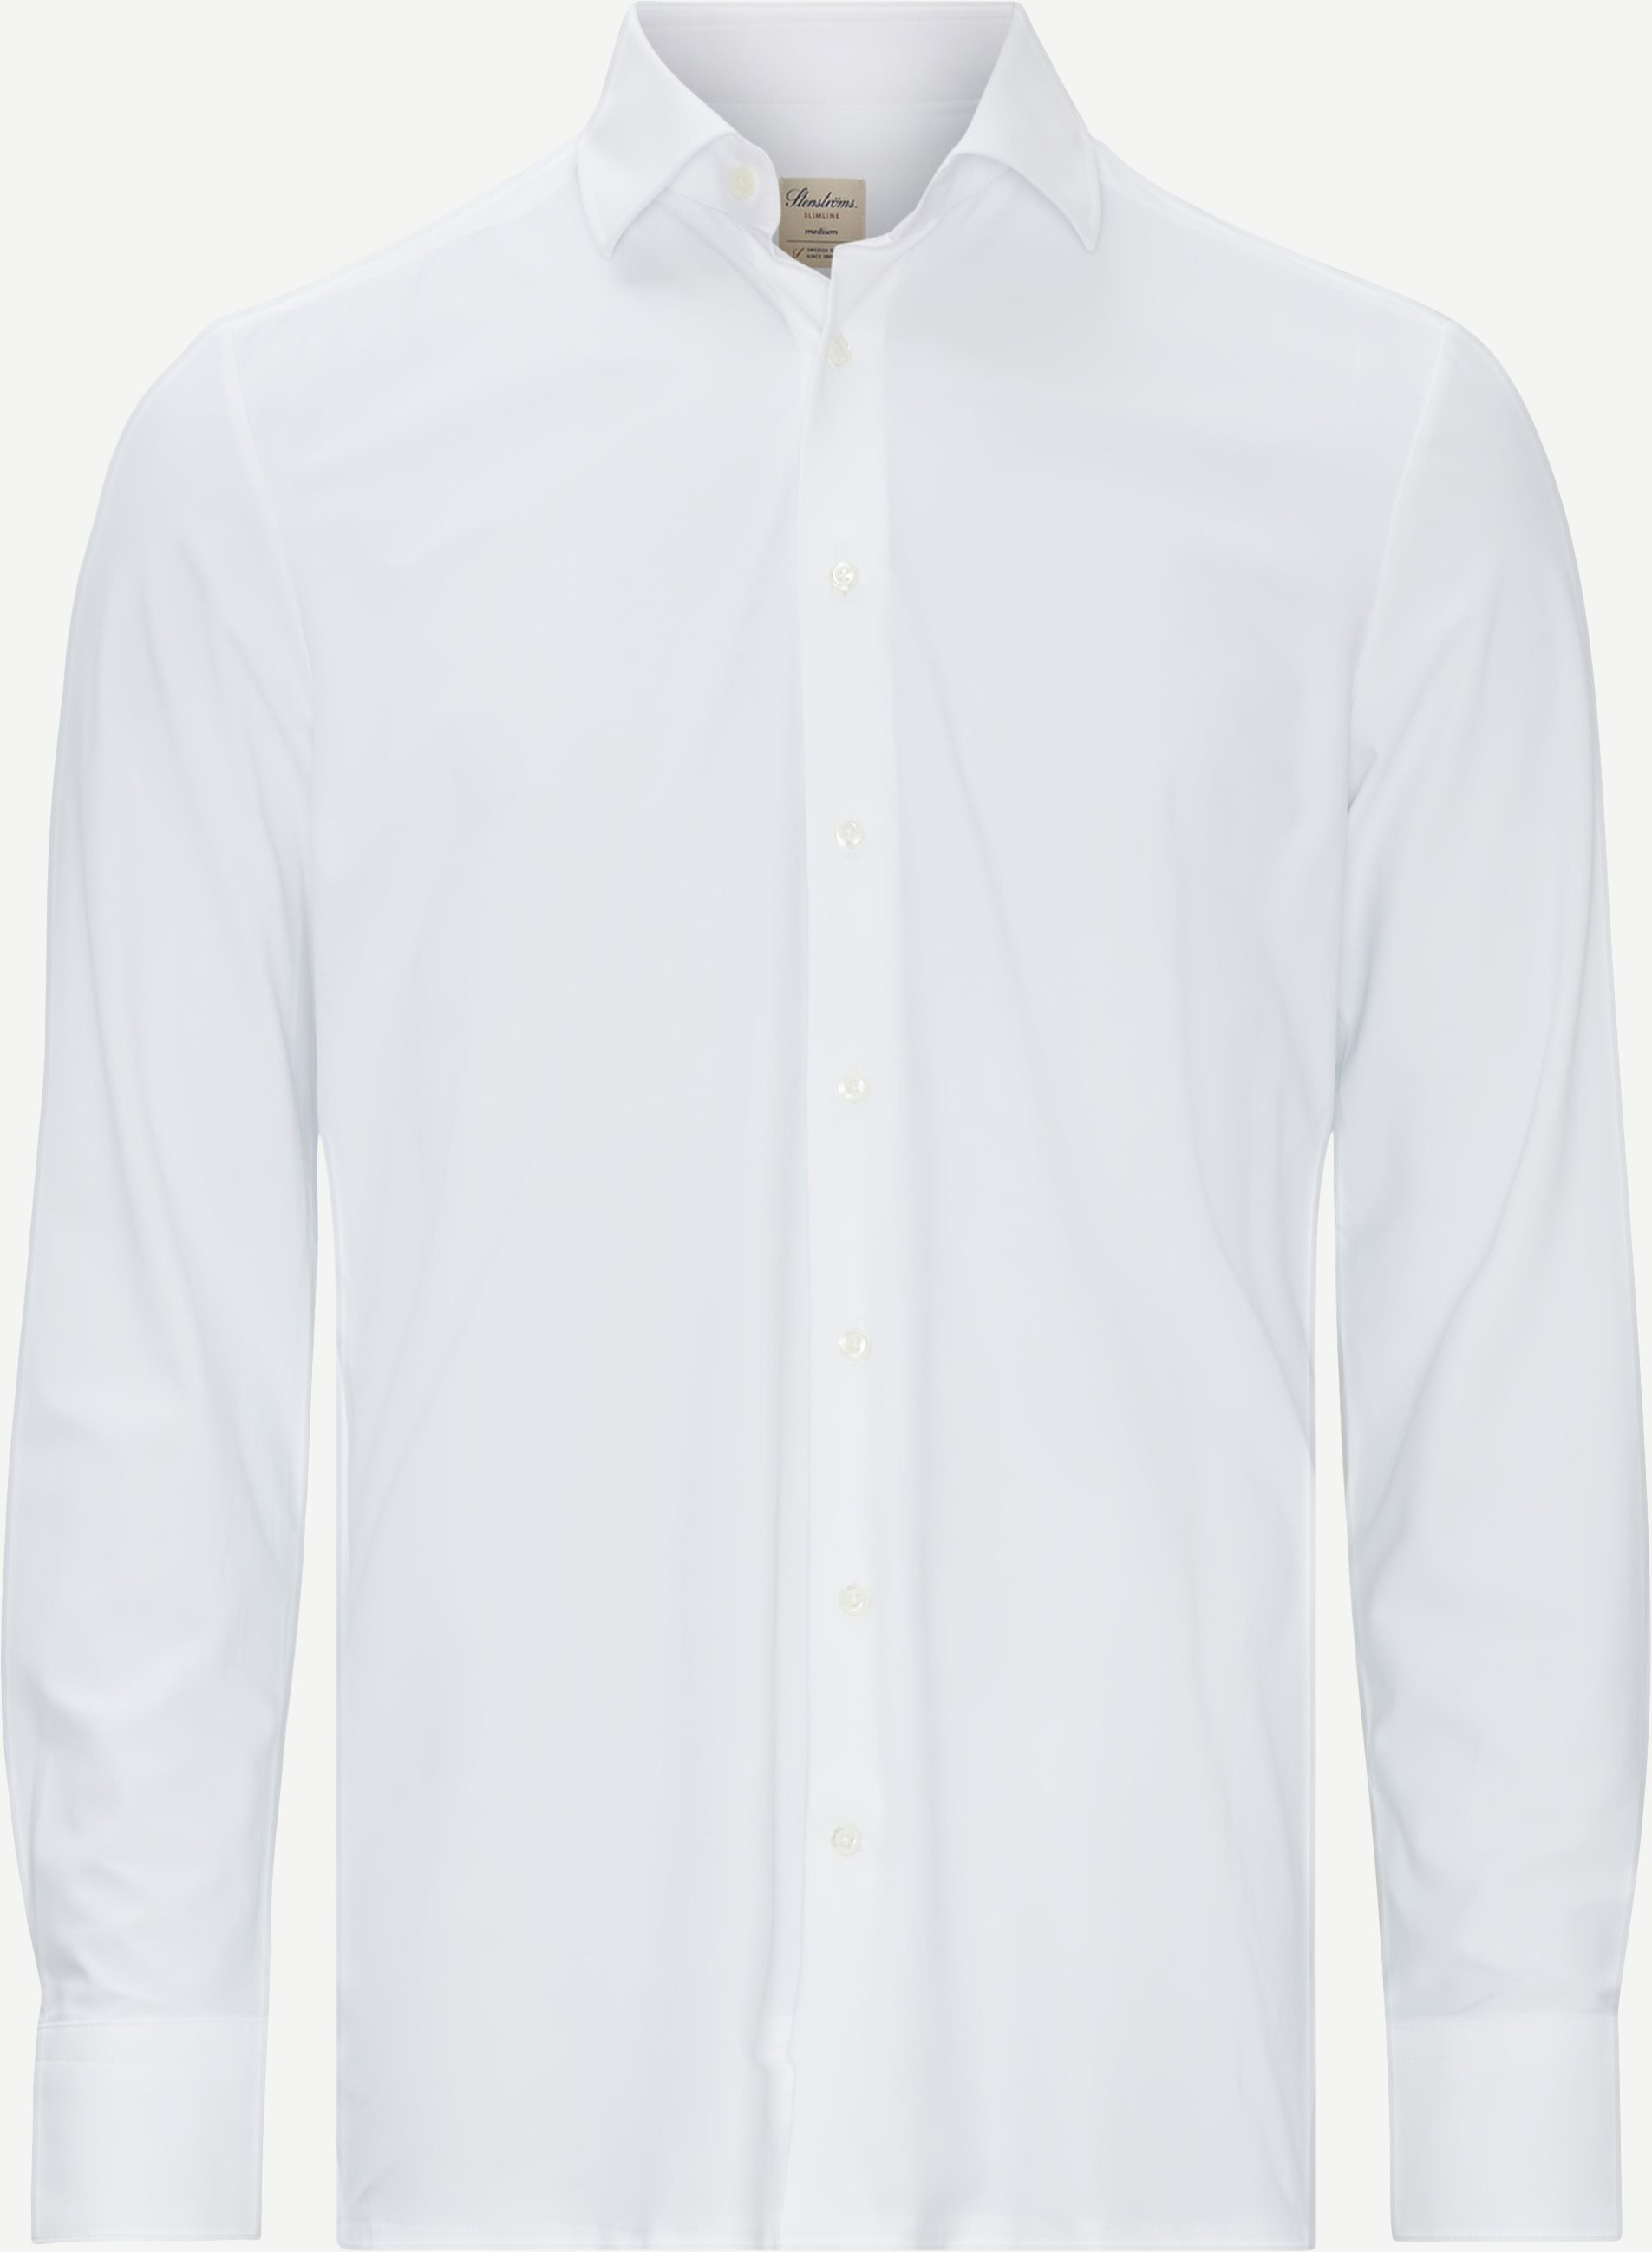 8269 Jersey Stretch Shirt - Skjorter - Slim fit - Hvid